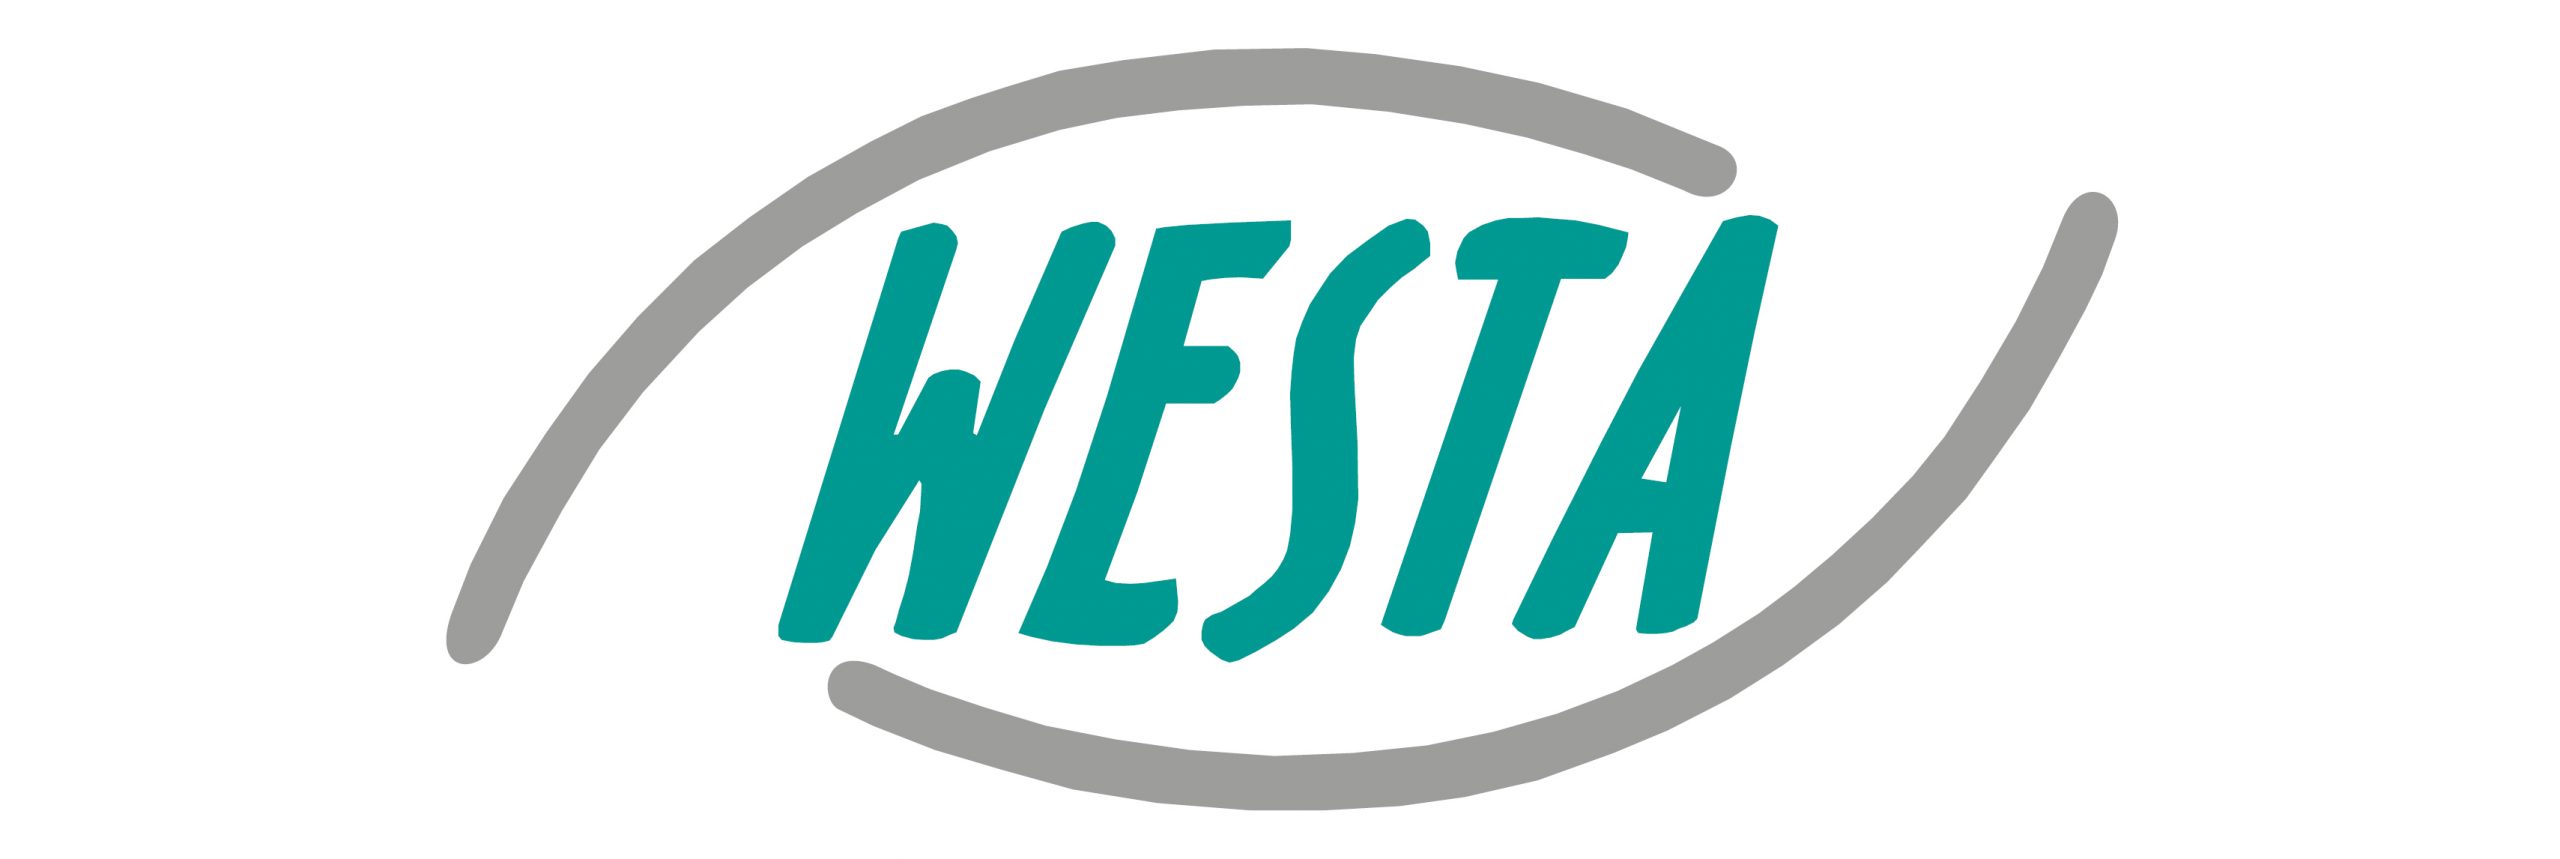 Westa Banner